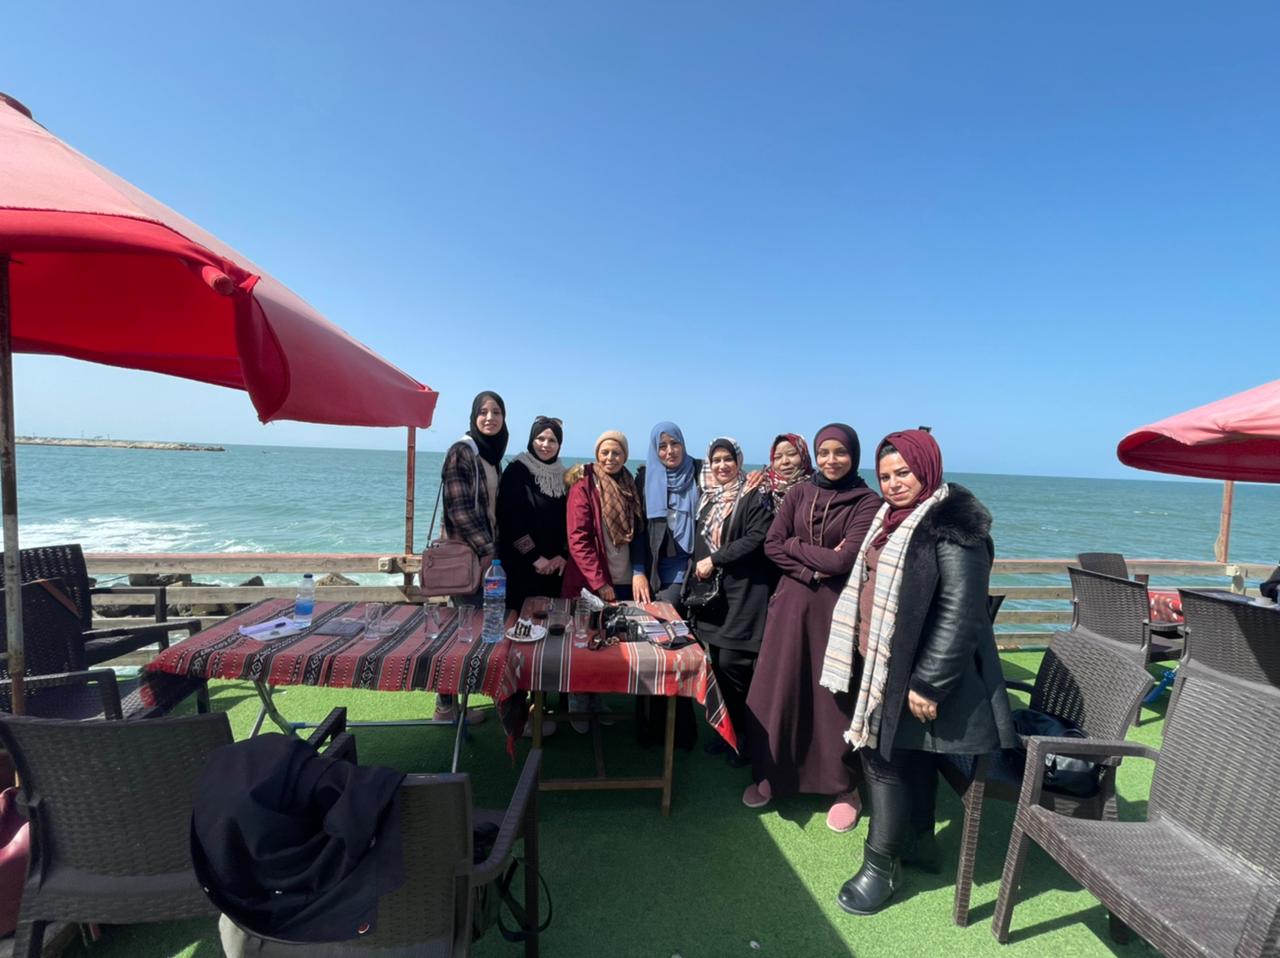 لجنة المرأة بنقابة الصحافيين الفلسطينيين بغزة تواصل عقد اجتماعاتها المستمرة لتنفيذ عدة فعاليات لشهر آذار